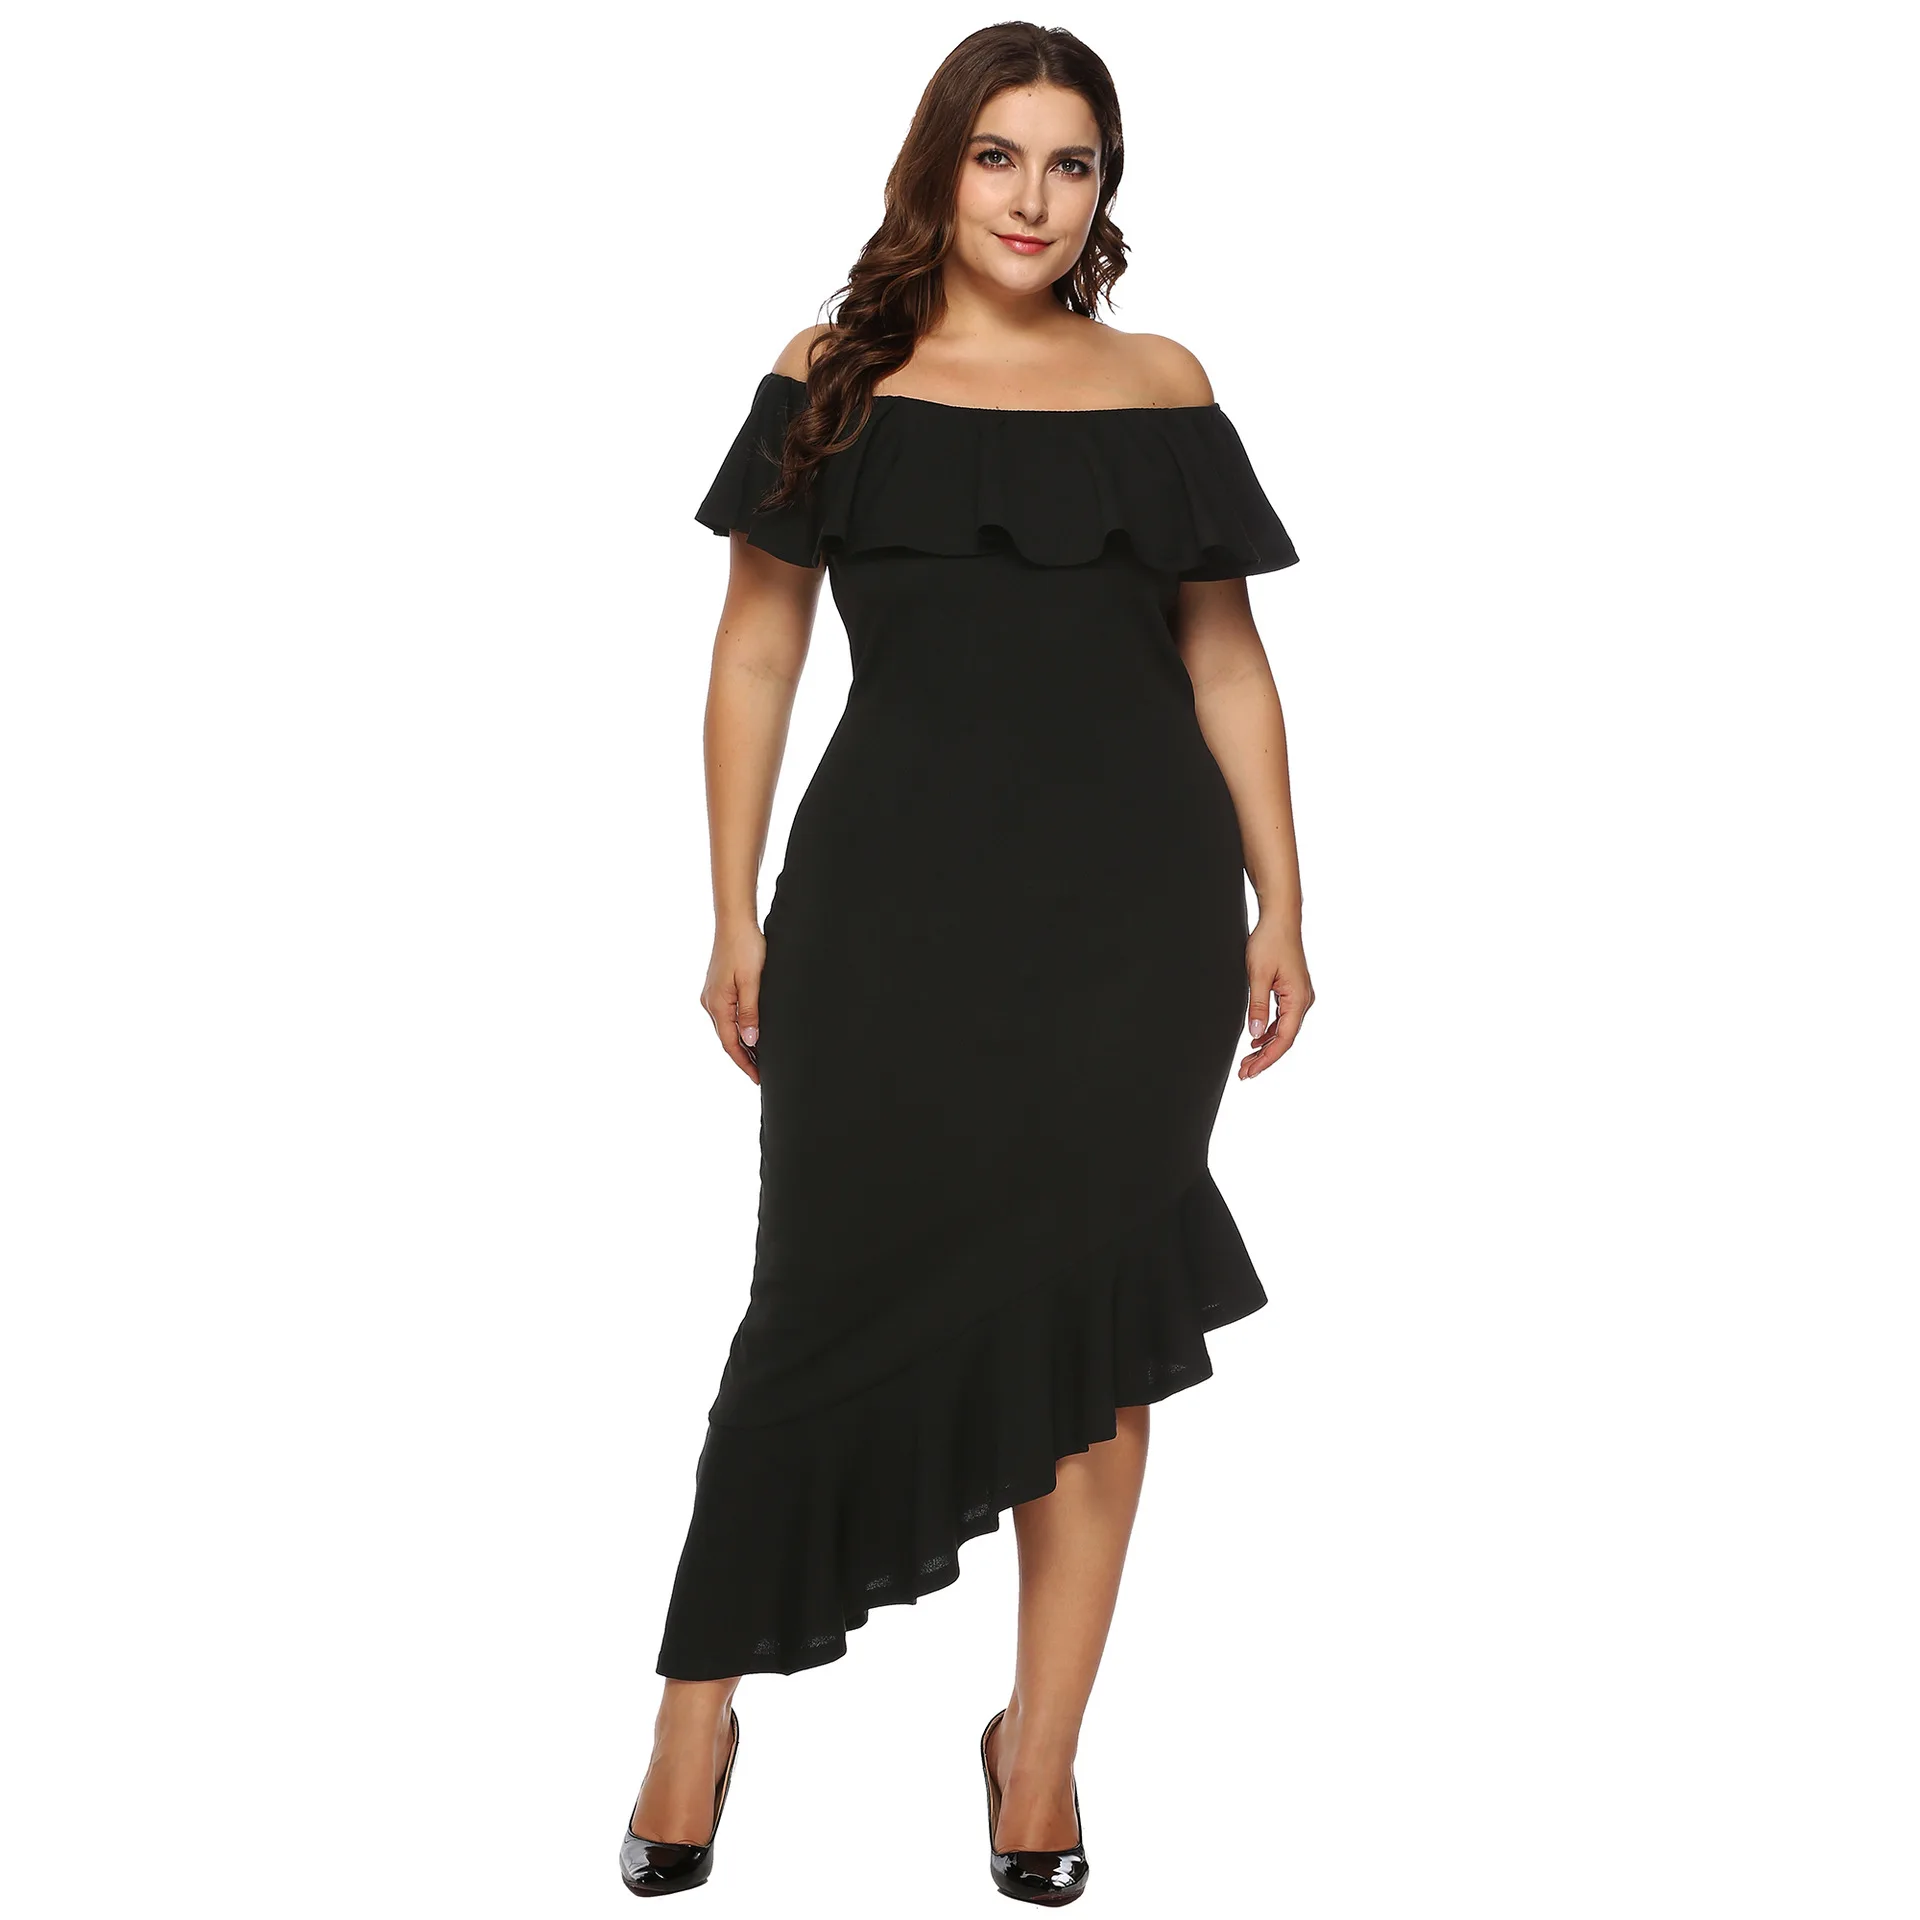 Vangull женское платье плюс размер платье с оборками Дамское Платье с вырезом лодочкой с открытыми плечами ретро черный по щиколотку платье Новое Vestido